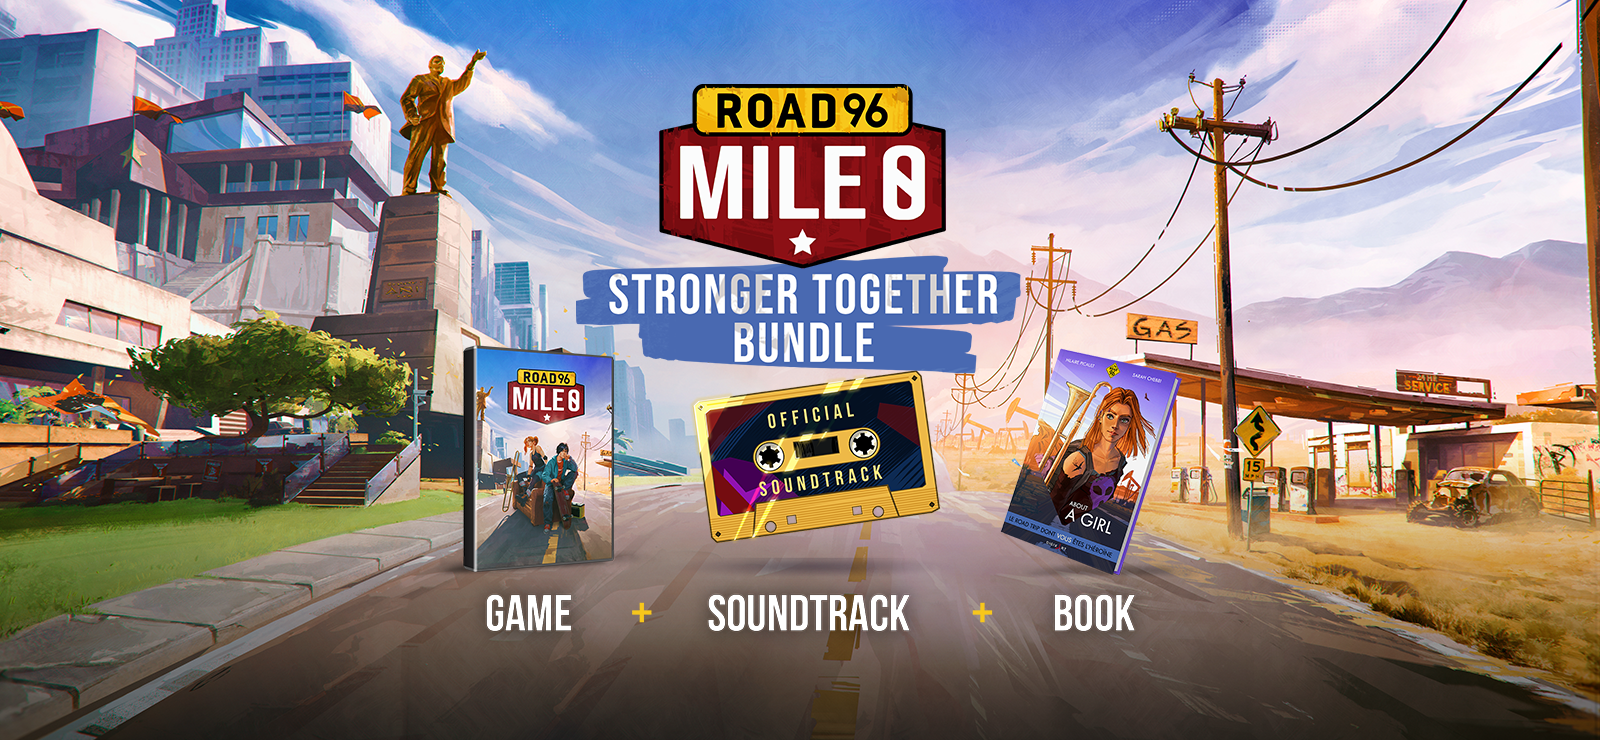 Road 96: Mile 0 - Stronger Together Bundle